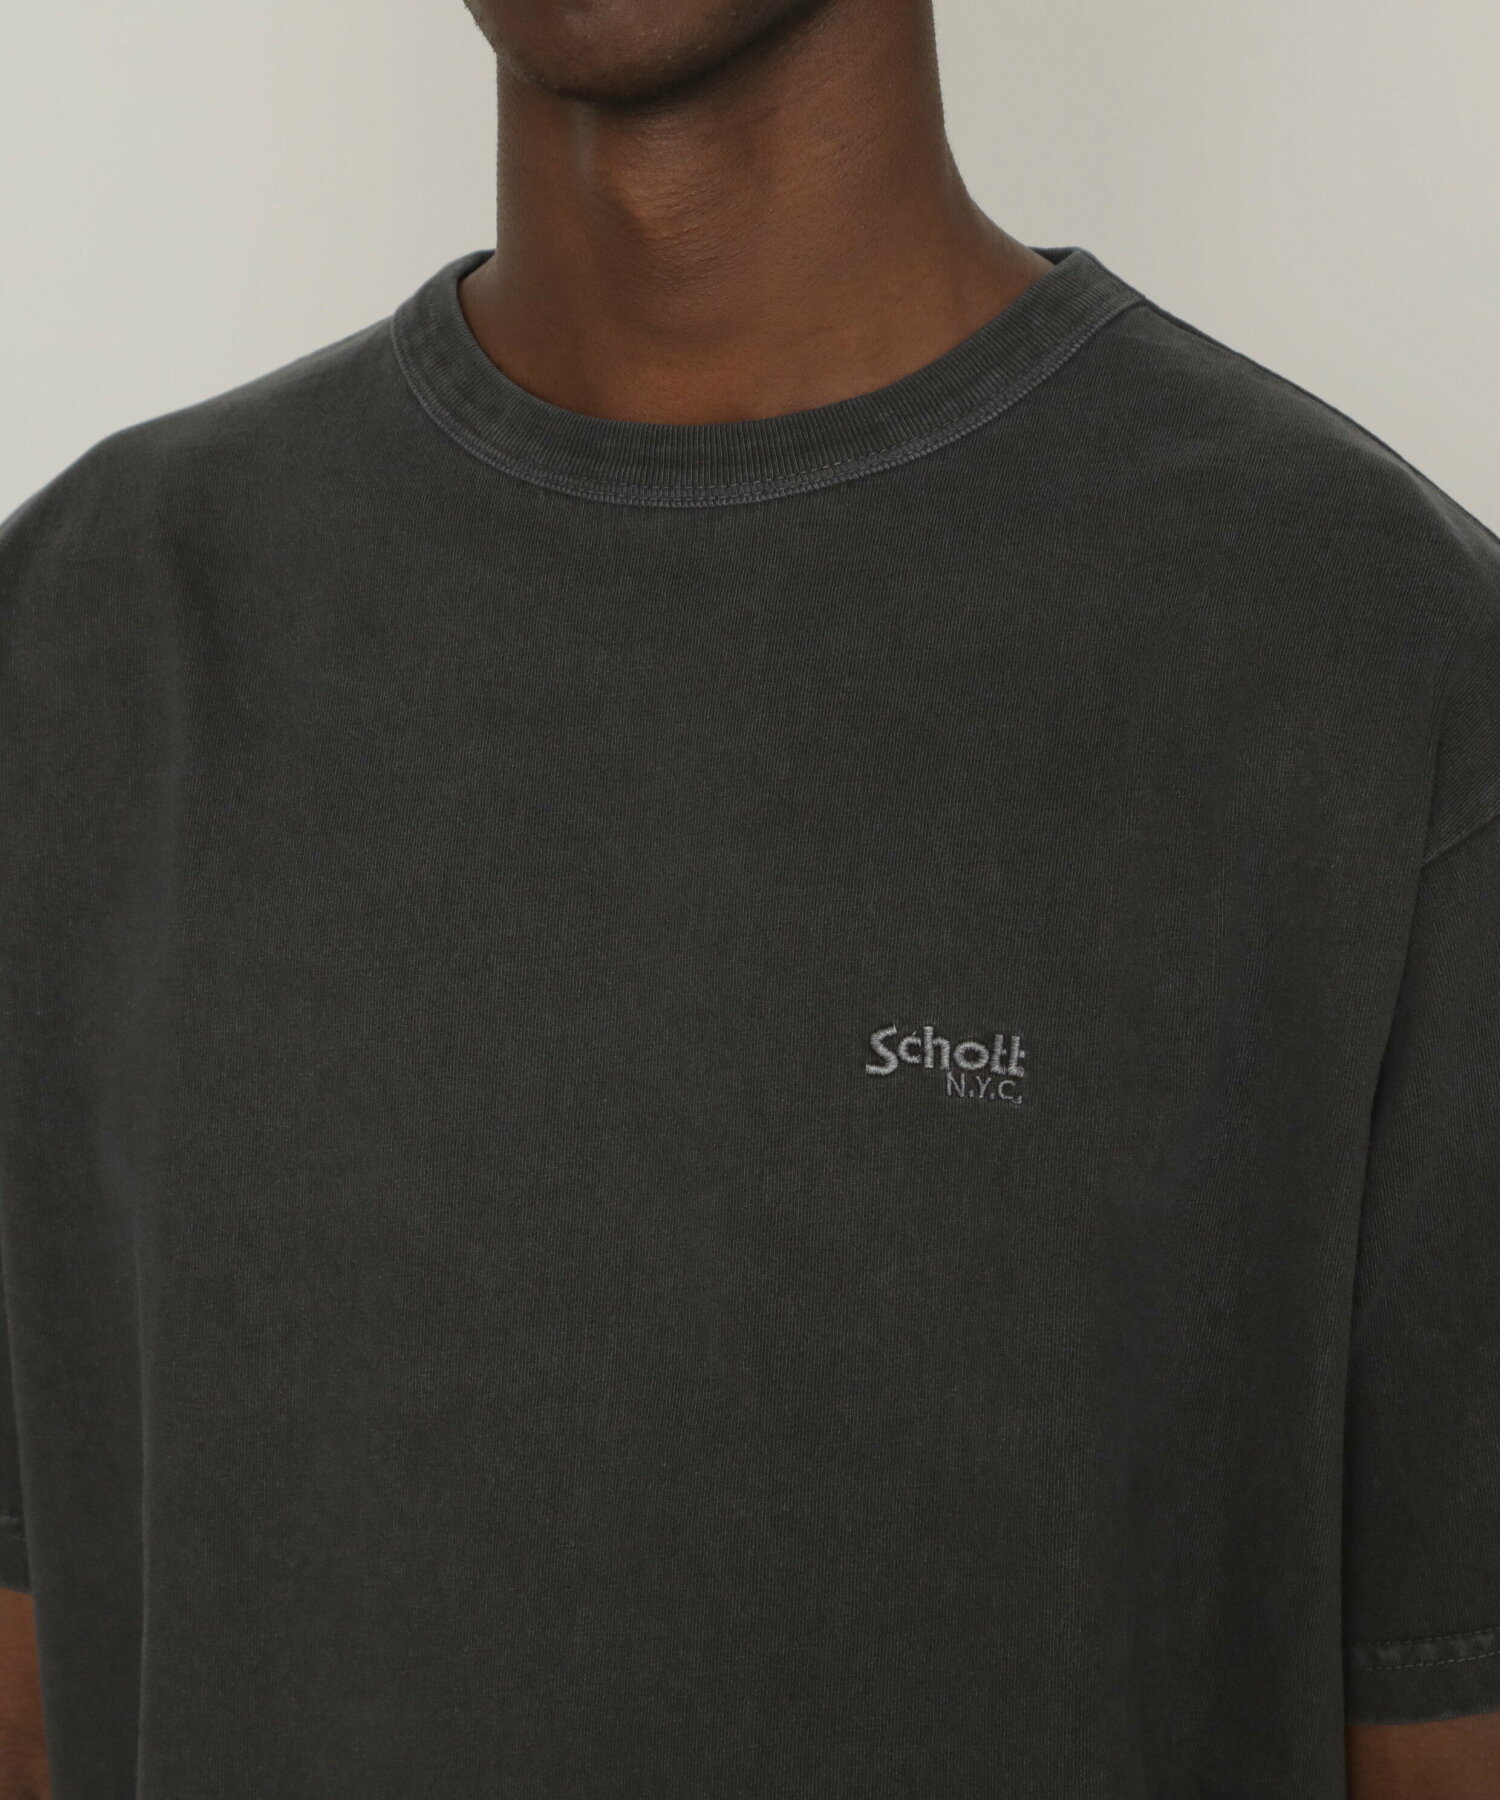 SS T-SHIRT MESSAGE WHEEL/メッセージホイール Tシャツ